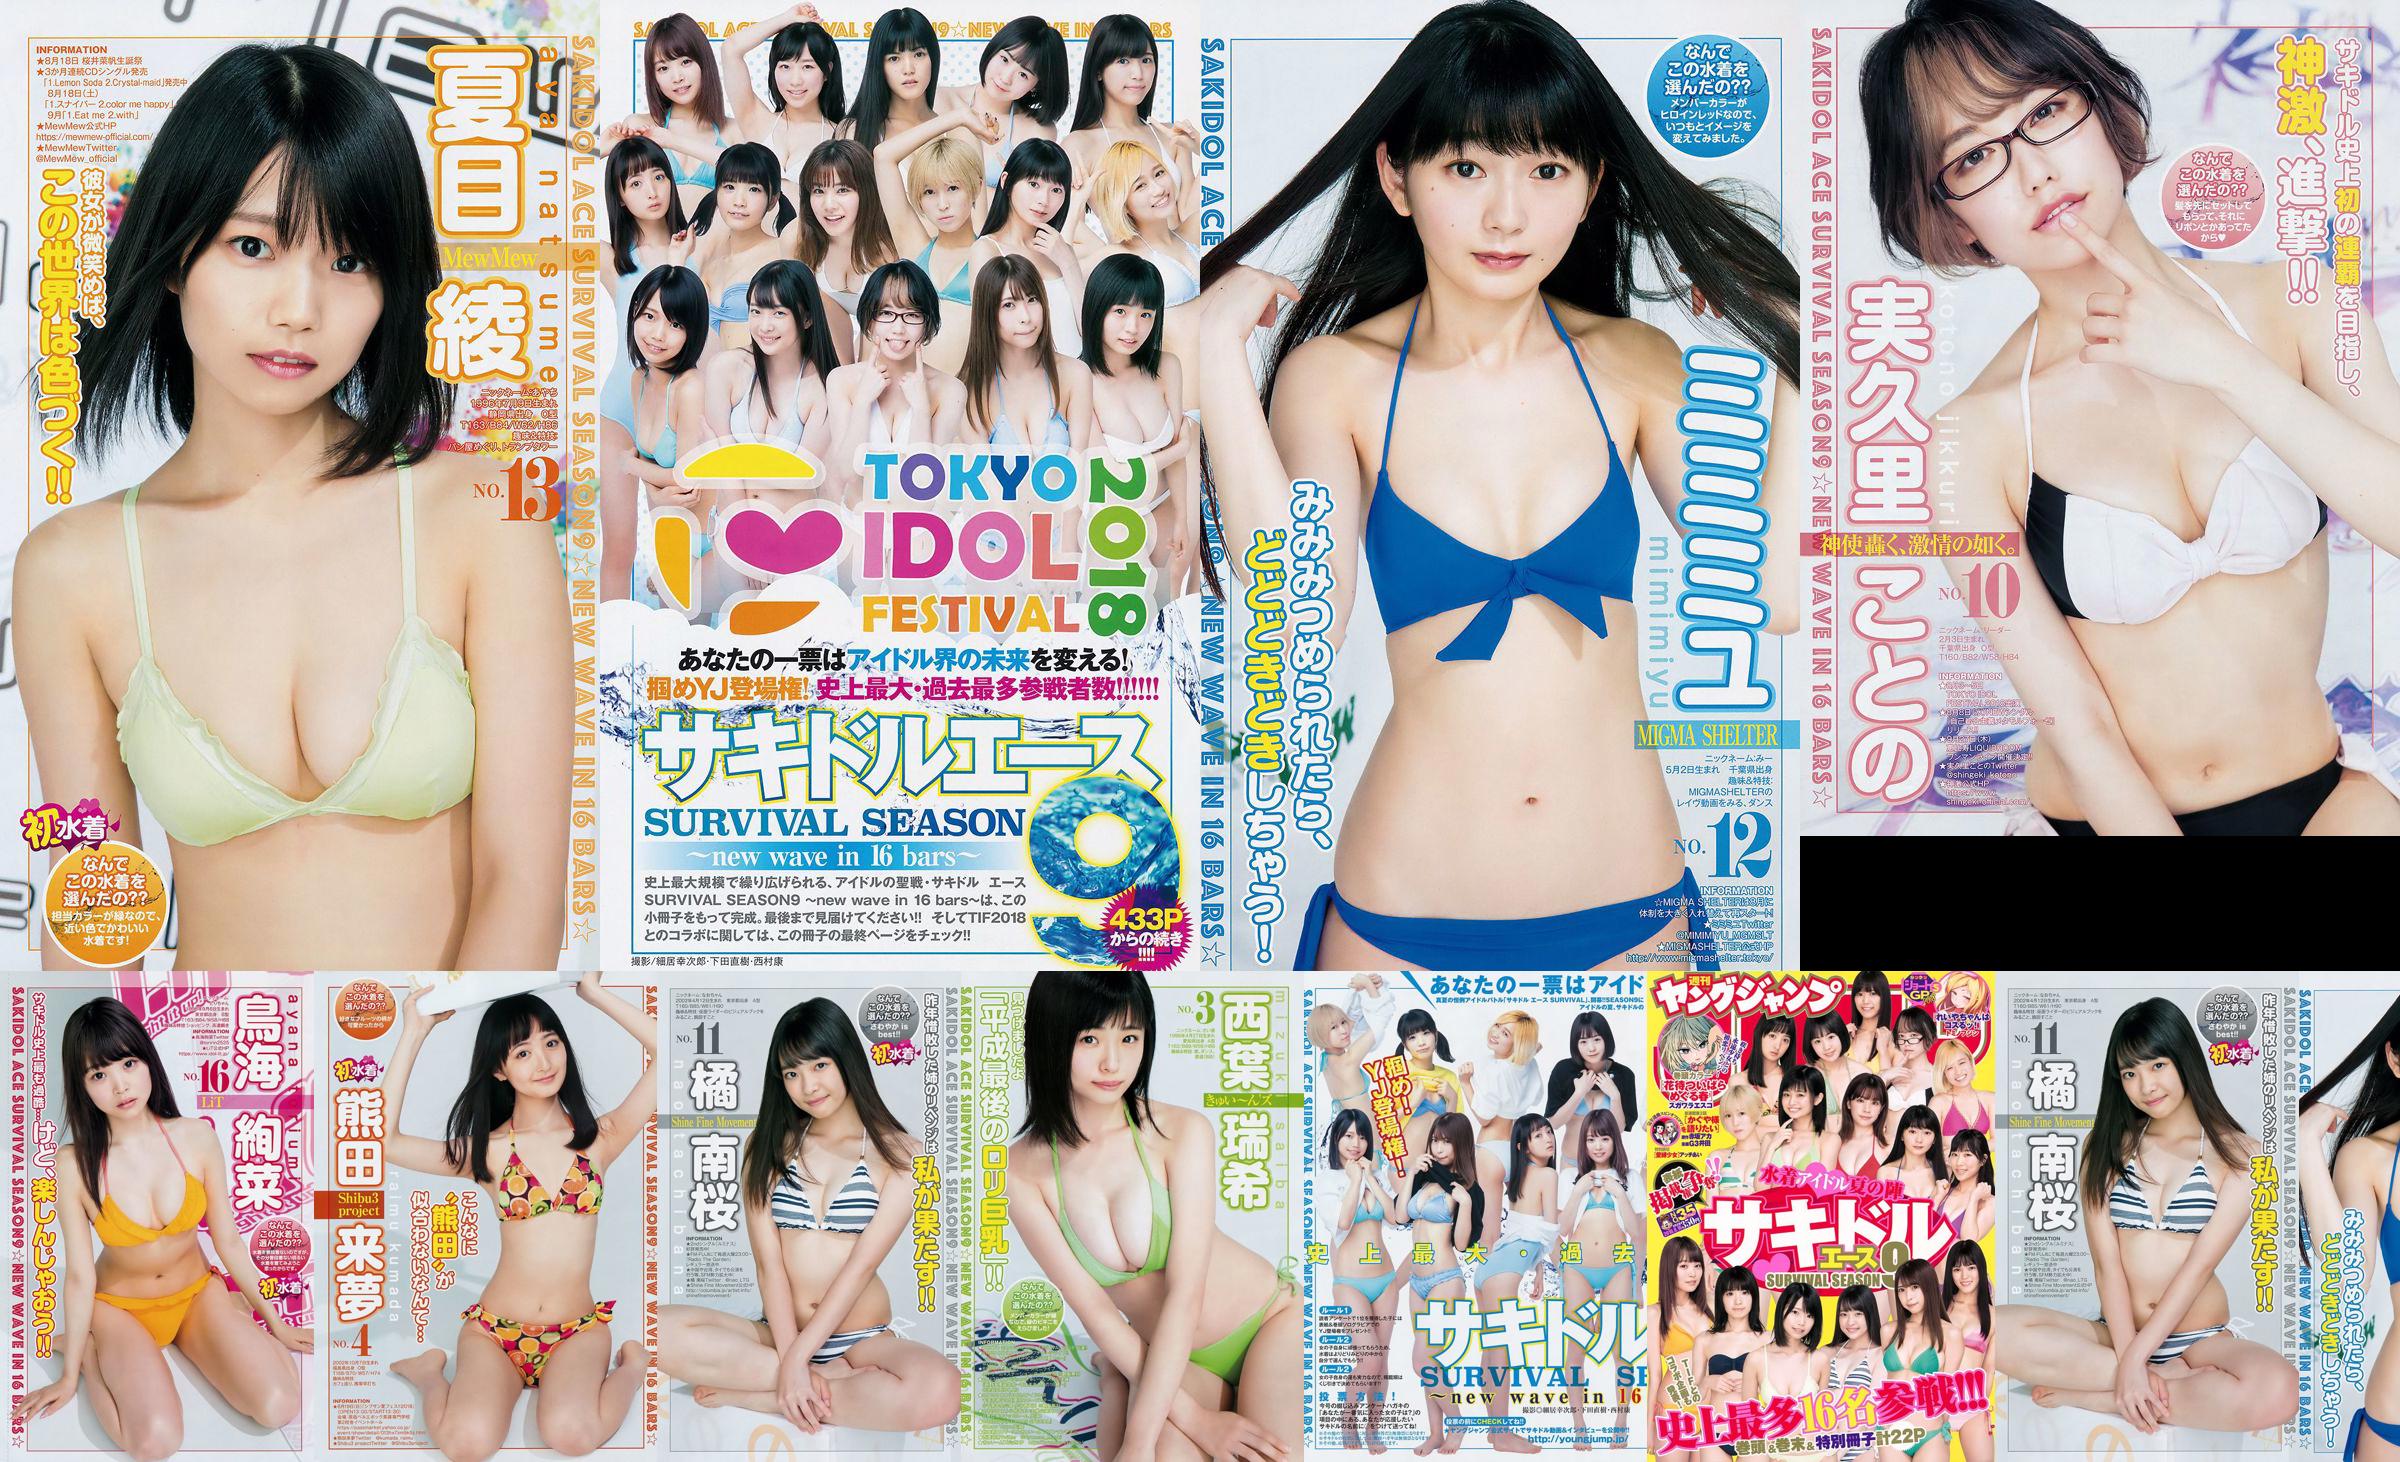 [FLASH] Ikumi Hisamatsu Risa Hirako Ren Ishikawa Anjo Moe AKB48 Kaho Shibuya Misuzu Hayashi Ririka 2015.04.21 Foto Toshi No.b2c283 Página 65